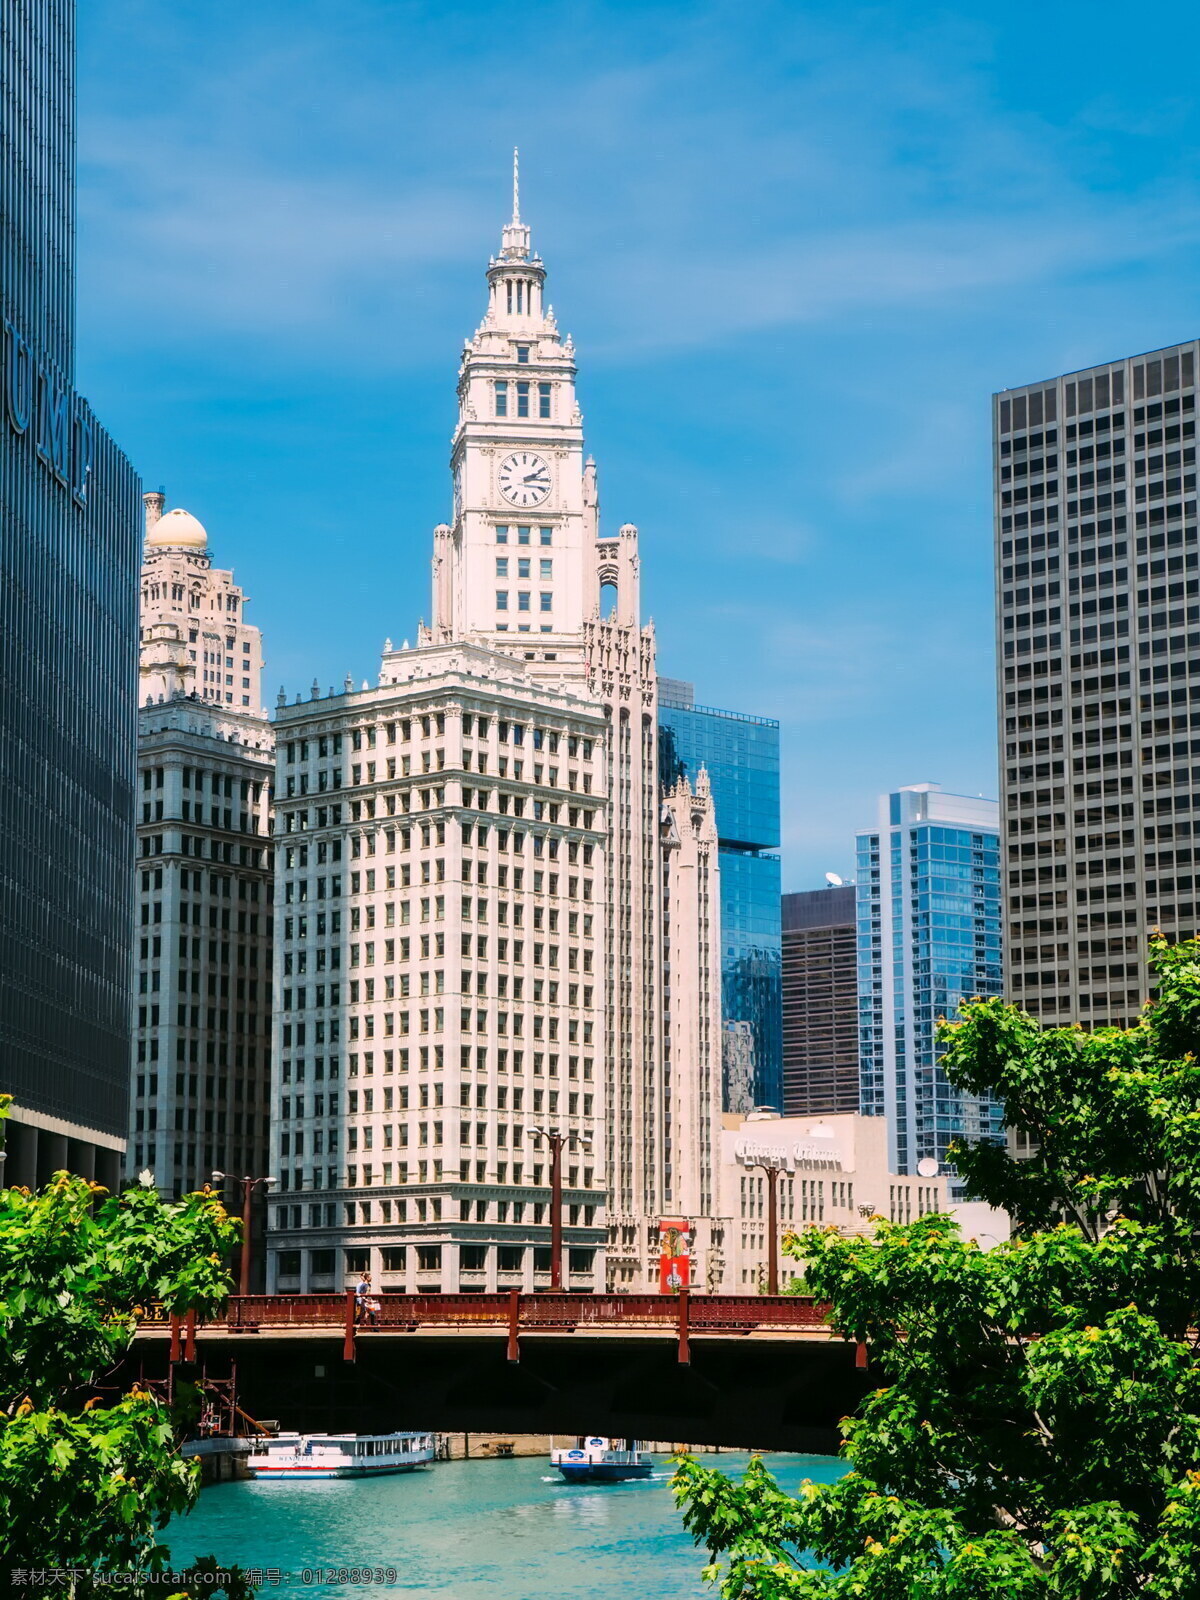 芝加哥 城市 建筑 美国 美国城市 都市 现代城市 城市建筑 大楼 高楼 建筑物 现代建筑 建筑摄影 建筑园林